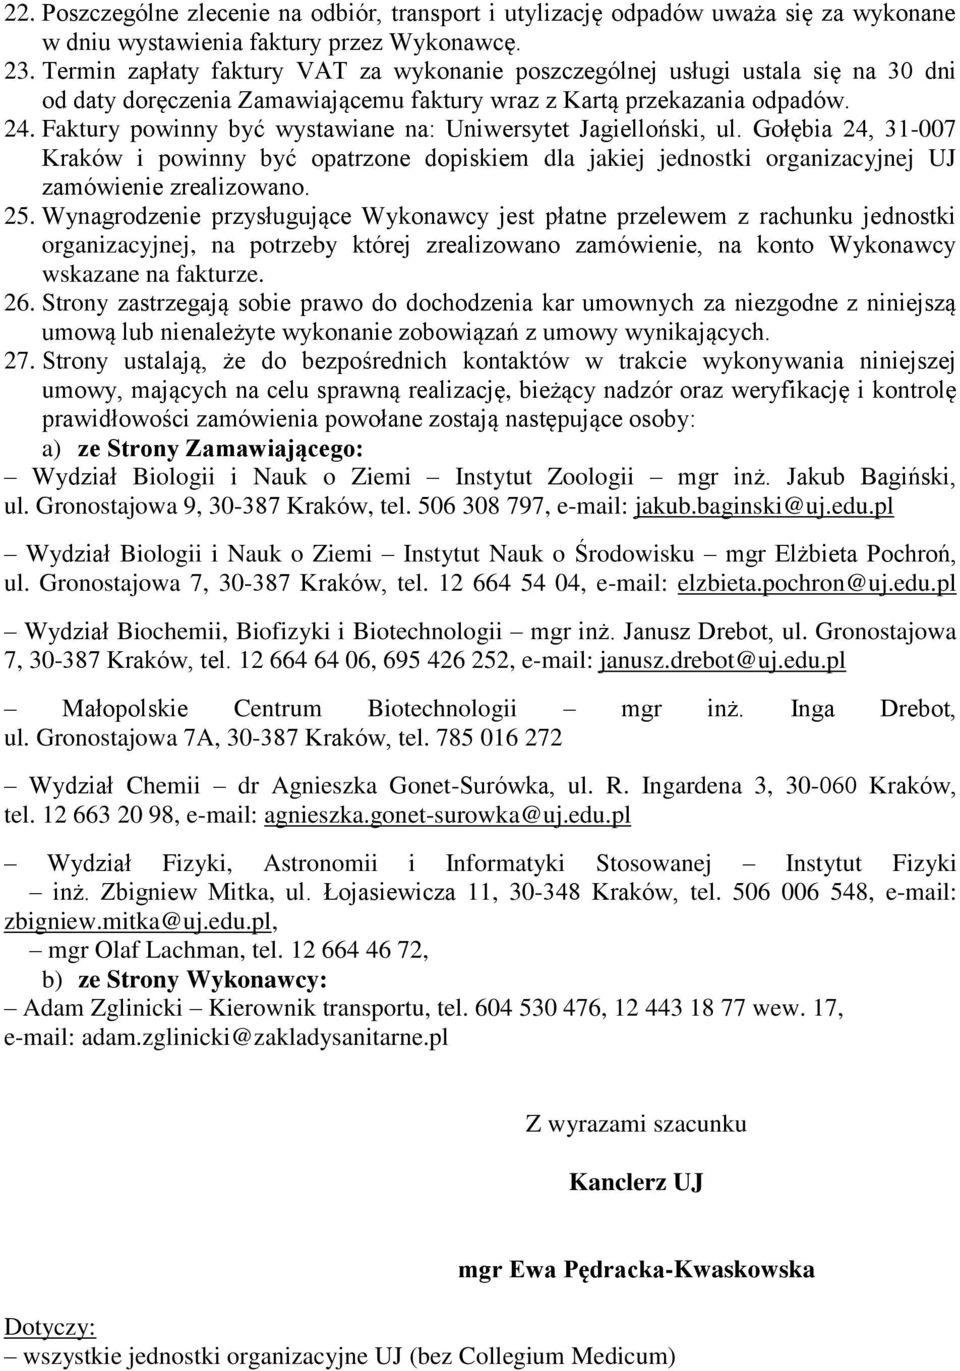 Faktury powinny być wystawiane na: Uniwersytet Jagielloński, ul. Gołębia 24, 31-007 Kraków i powinny być opatrzone dopiskiem dla jakiej jednostki organizacyjnej UJ zamówienie zrealizowano. 25.